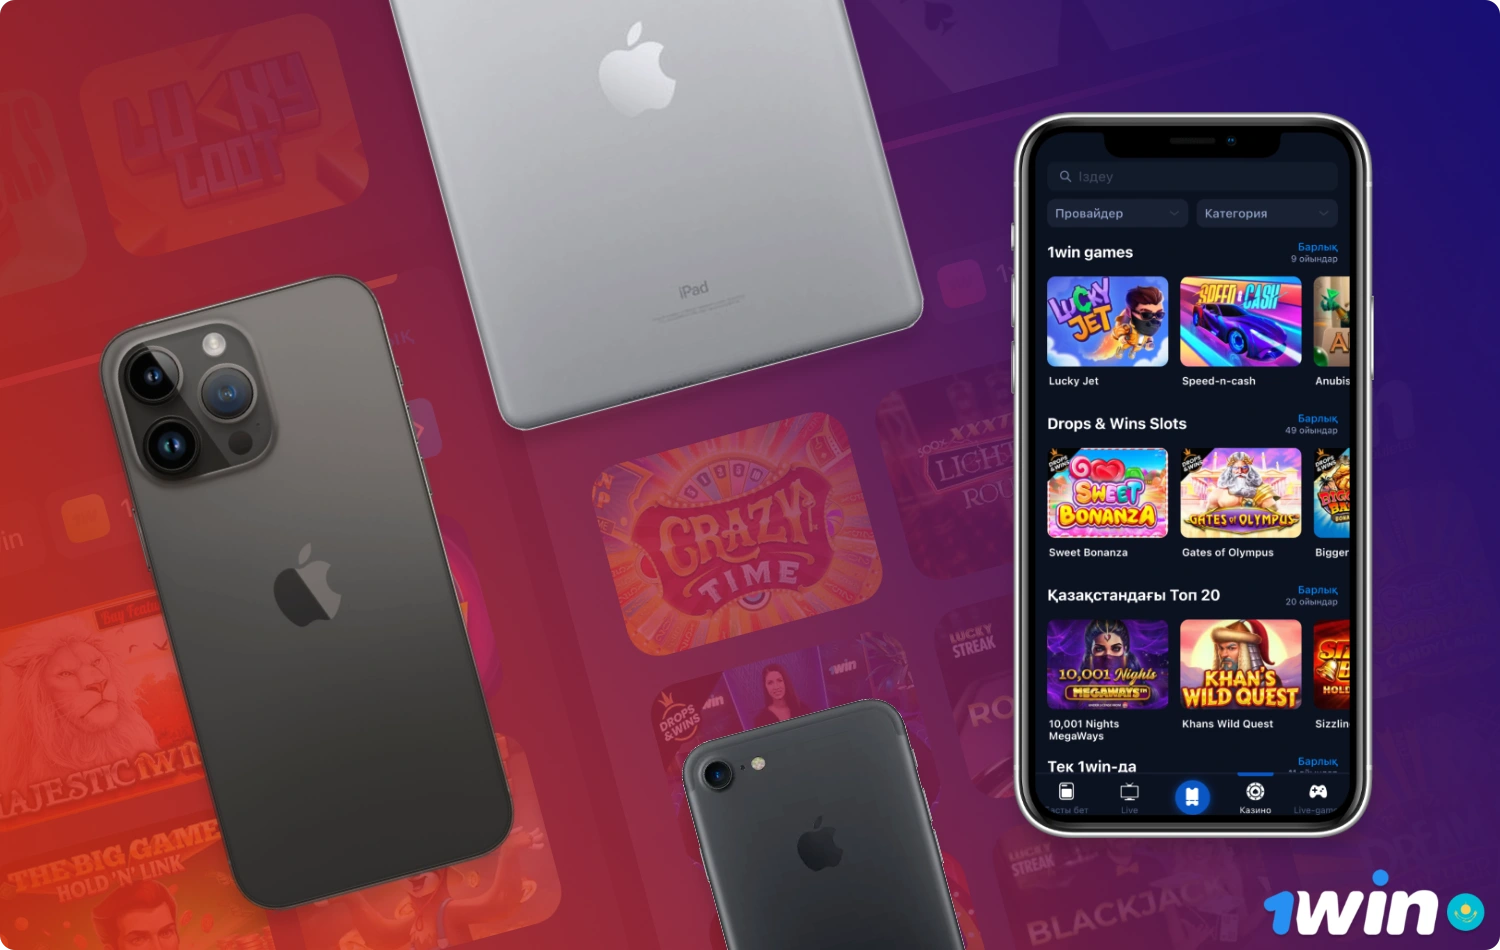 Официальное приложение 1win для iOS совместимо со всеми современными устройствами iPhone и iPad